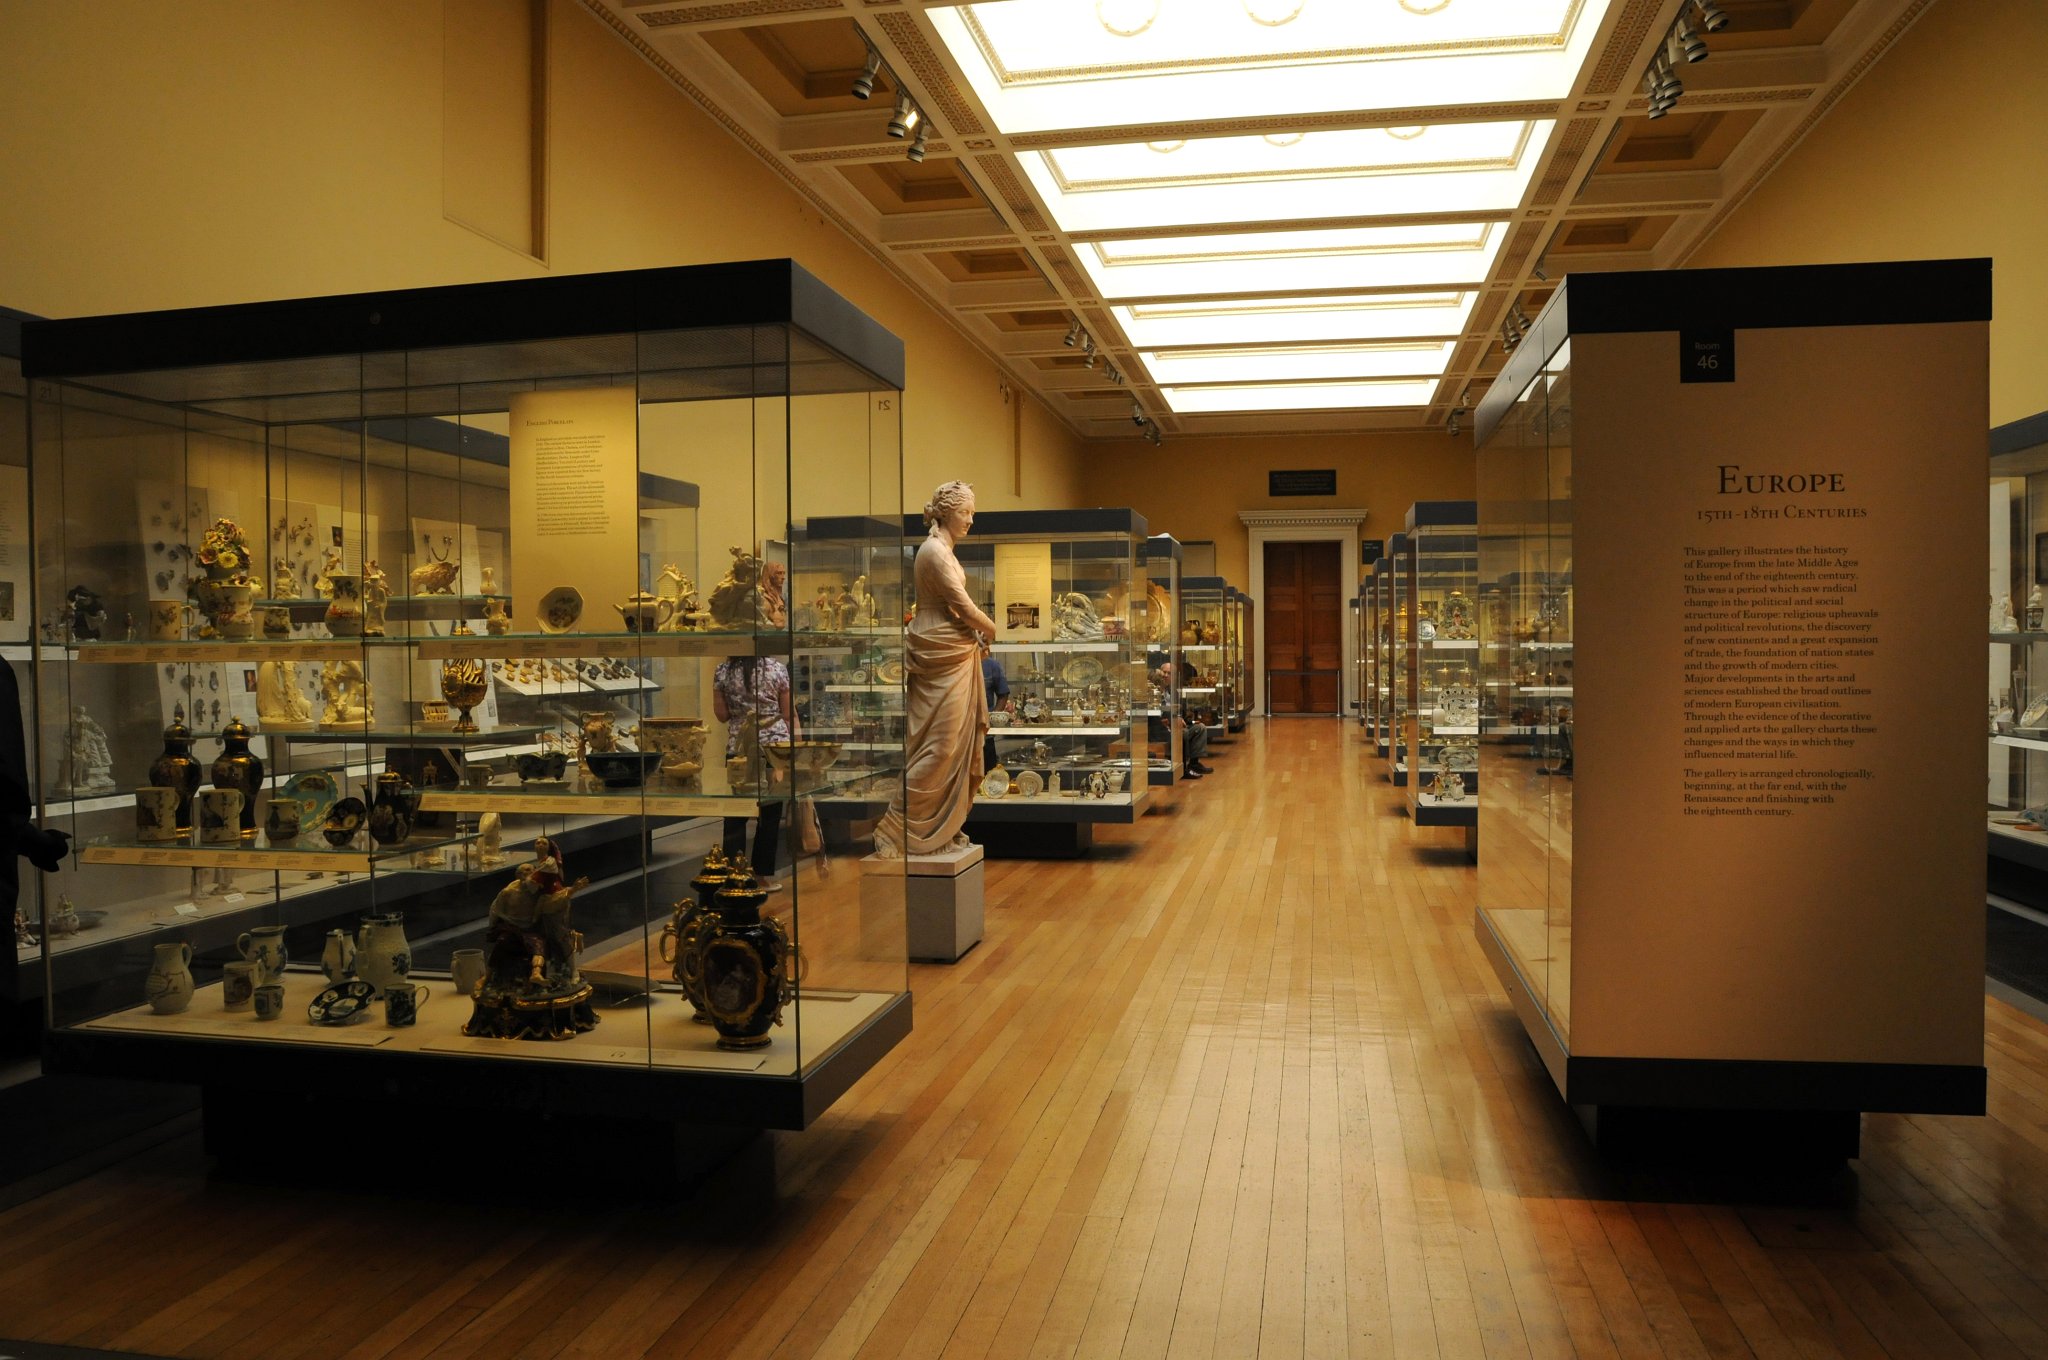 DSC_5827_1.jpg - Britské muzeum obsahuje sbírky obsahující více než sedm miliónů předmětů ze všech kontinentů dokumentujících historii lidstva od počátku až do současnosti. Mnohé objekty jsou uschovány mimo budovu muzea z důvodu nedostatku místa.